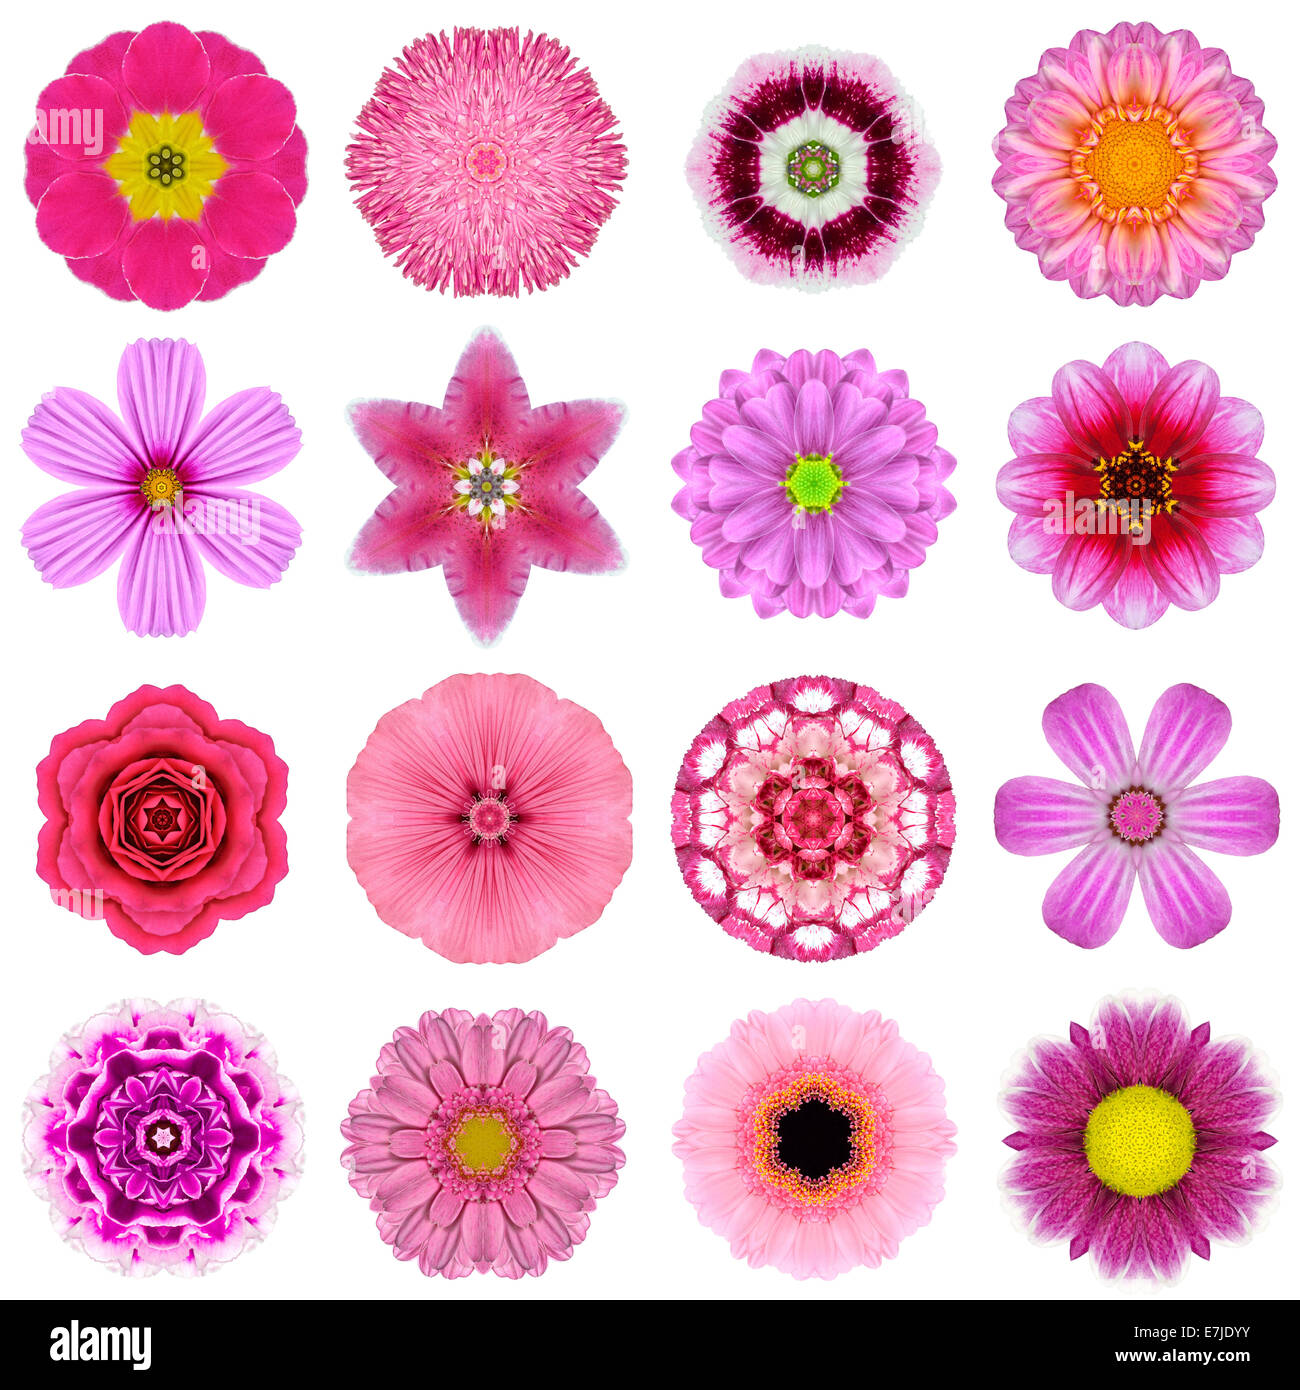 Große Sammlung von verschiedenen lila konzentrische Muster Blumen. Kaleidoskopische Mandala-Muster, Isolated on White Background. Konzen Stockfoto